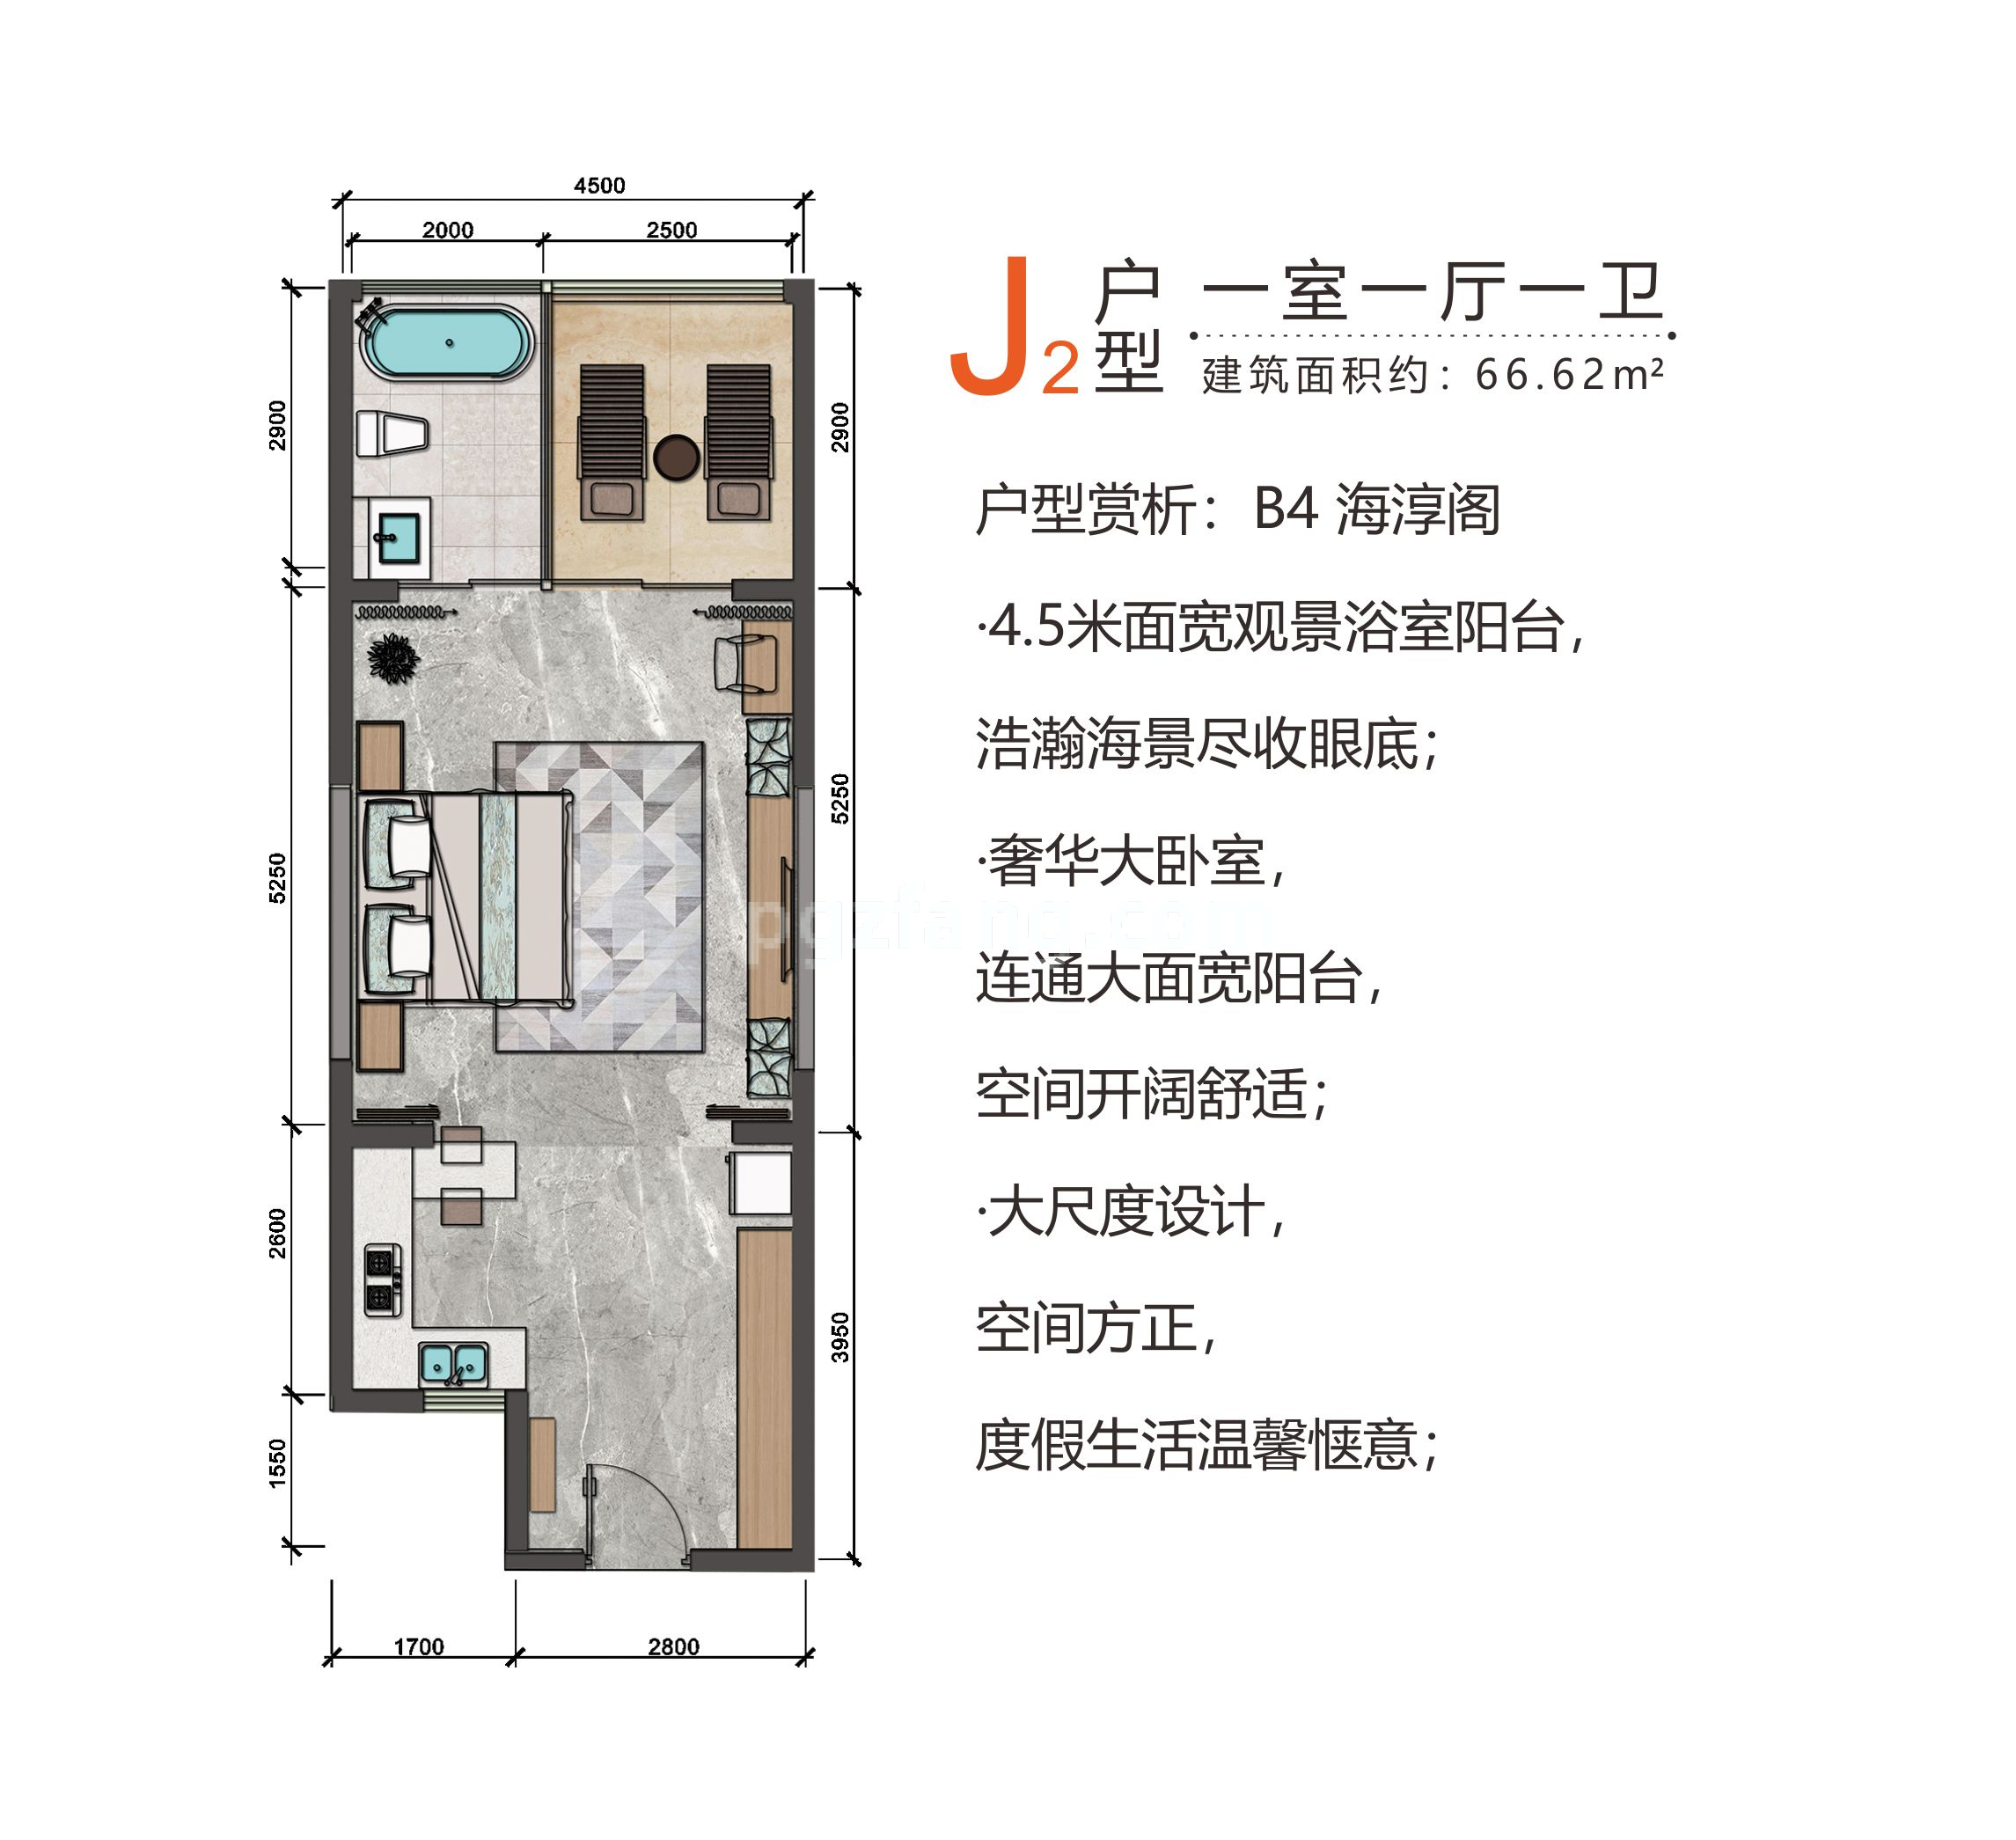 高层 J2户型 一室一厅一卫 建筑面积66.62㎡